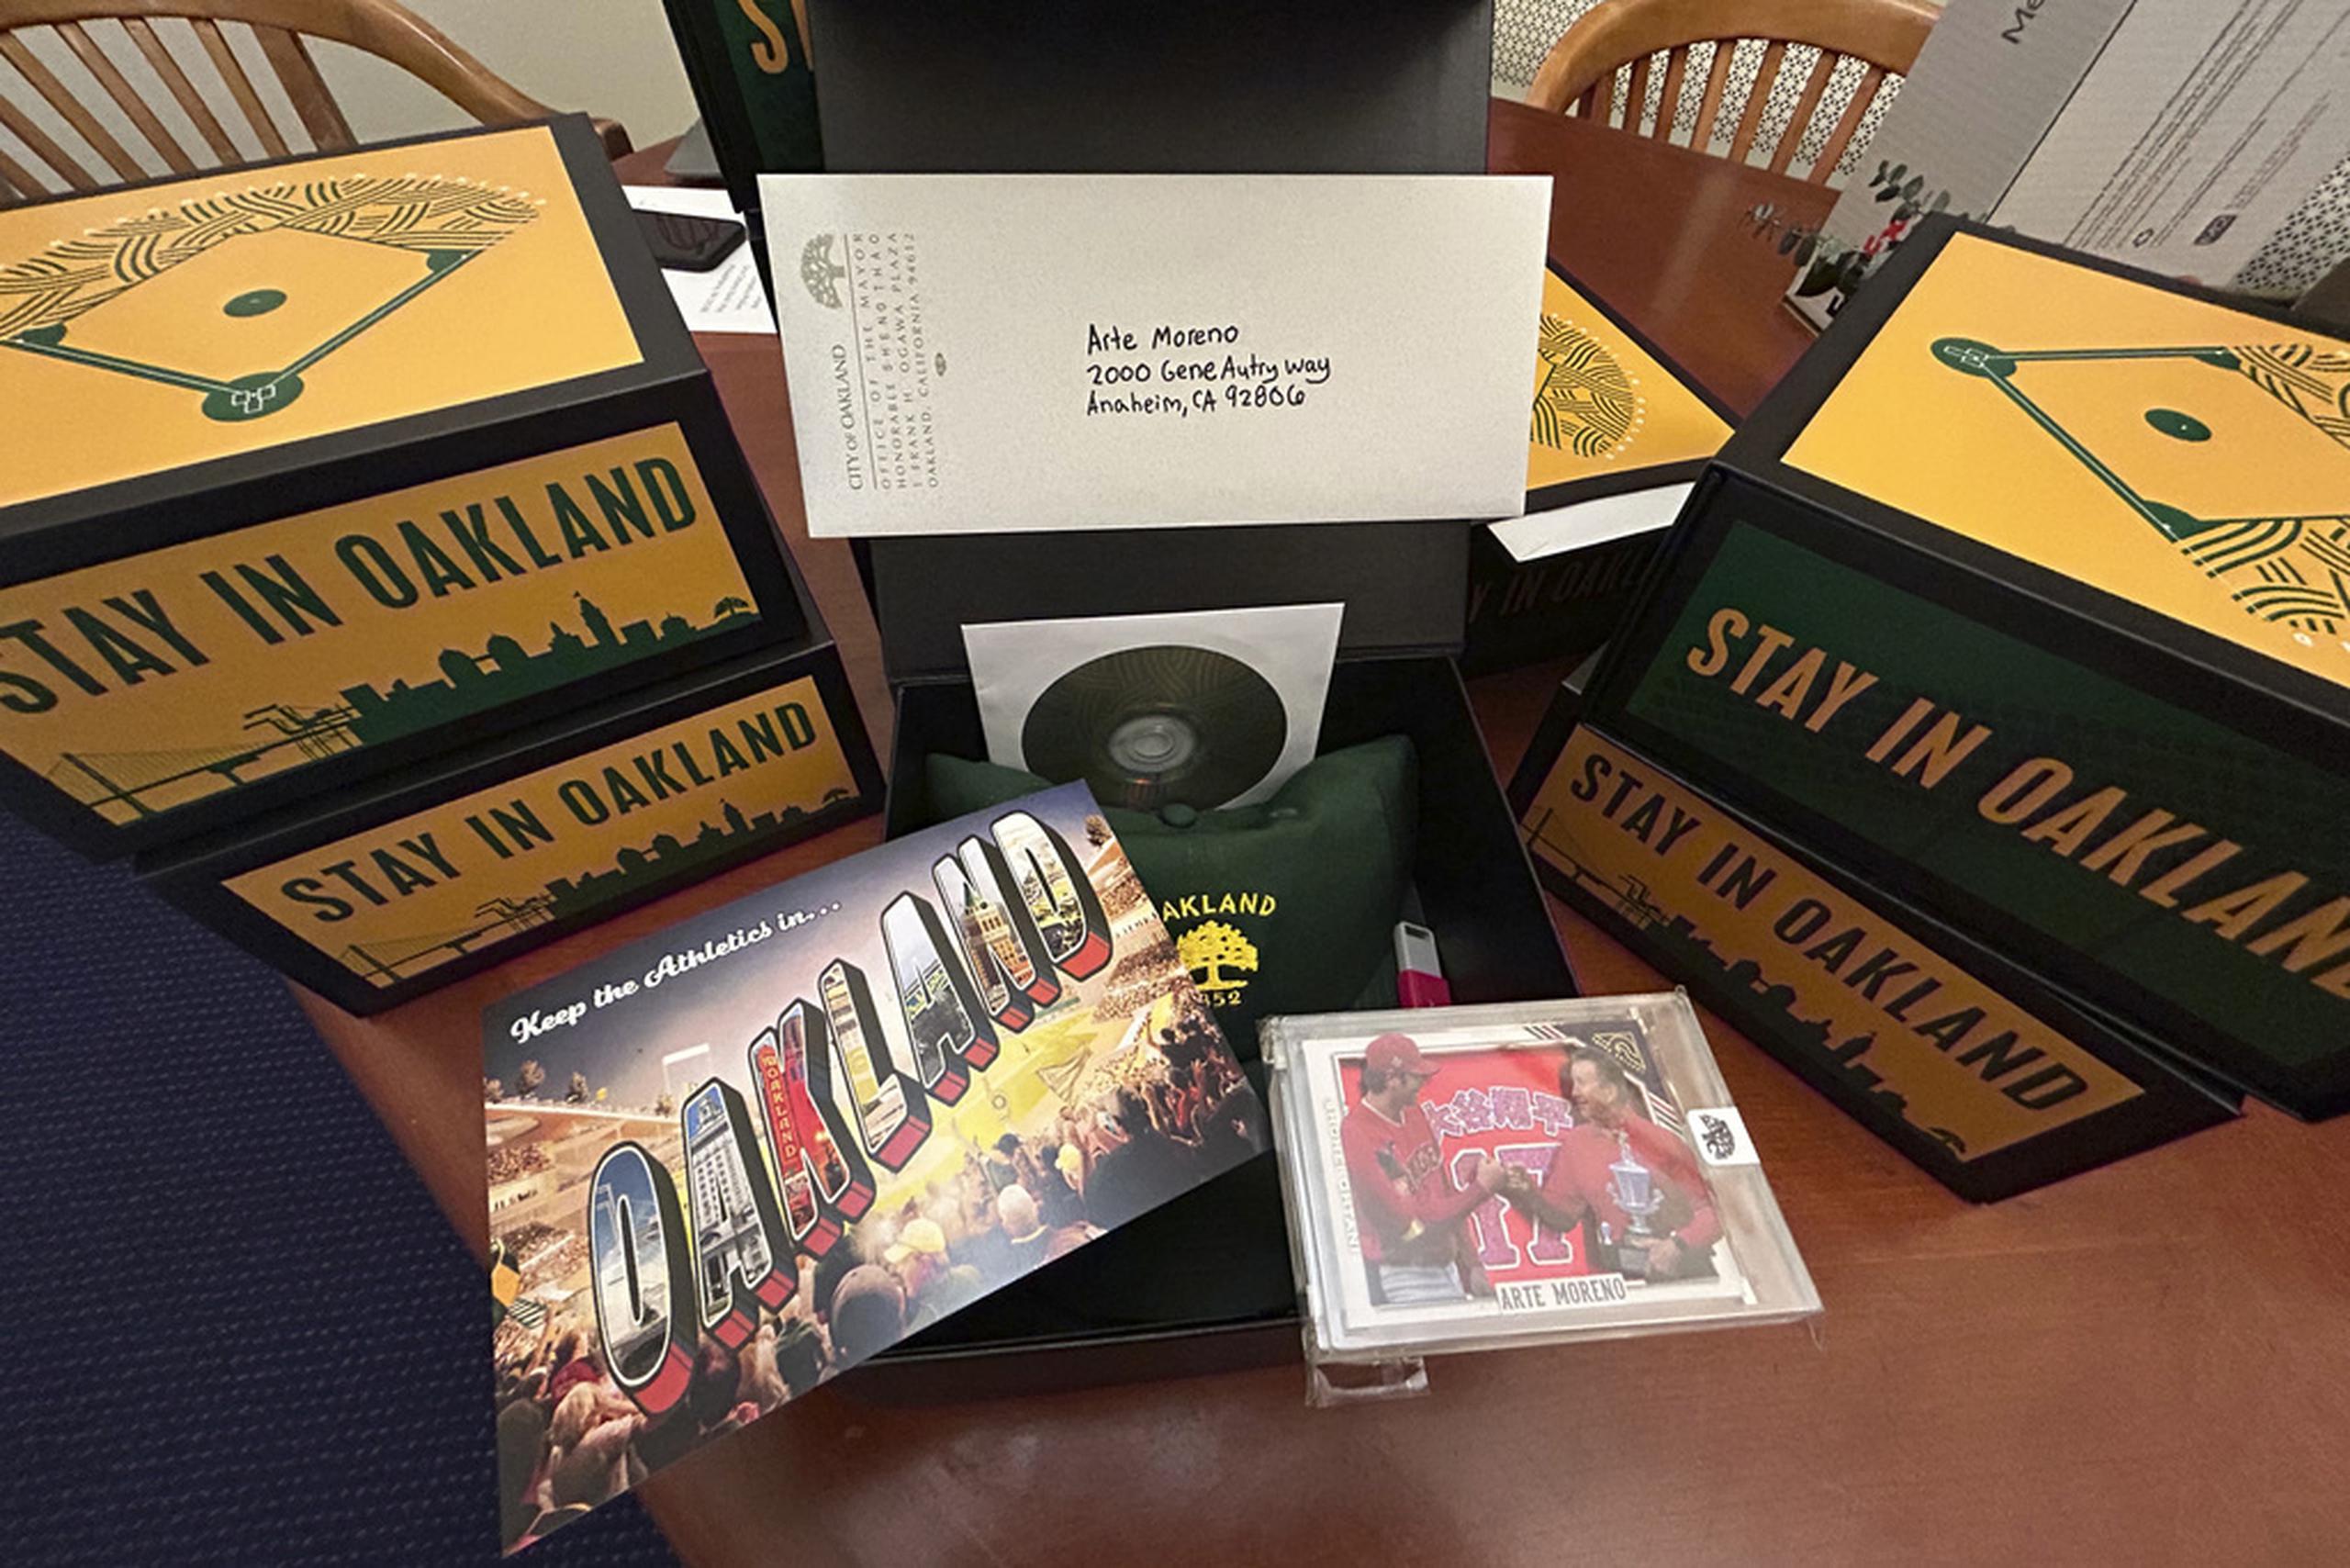 Al menos la mitad de los dueños recibieron cajas especiales con el mensaje “Stay in Oakland” que enviaron los aficionados.